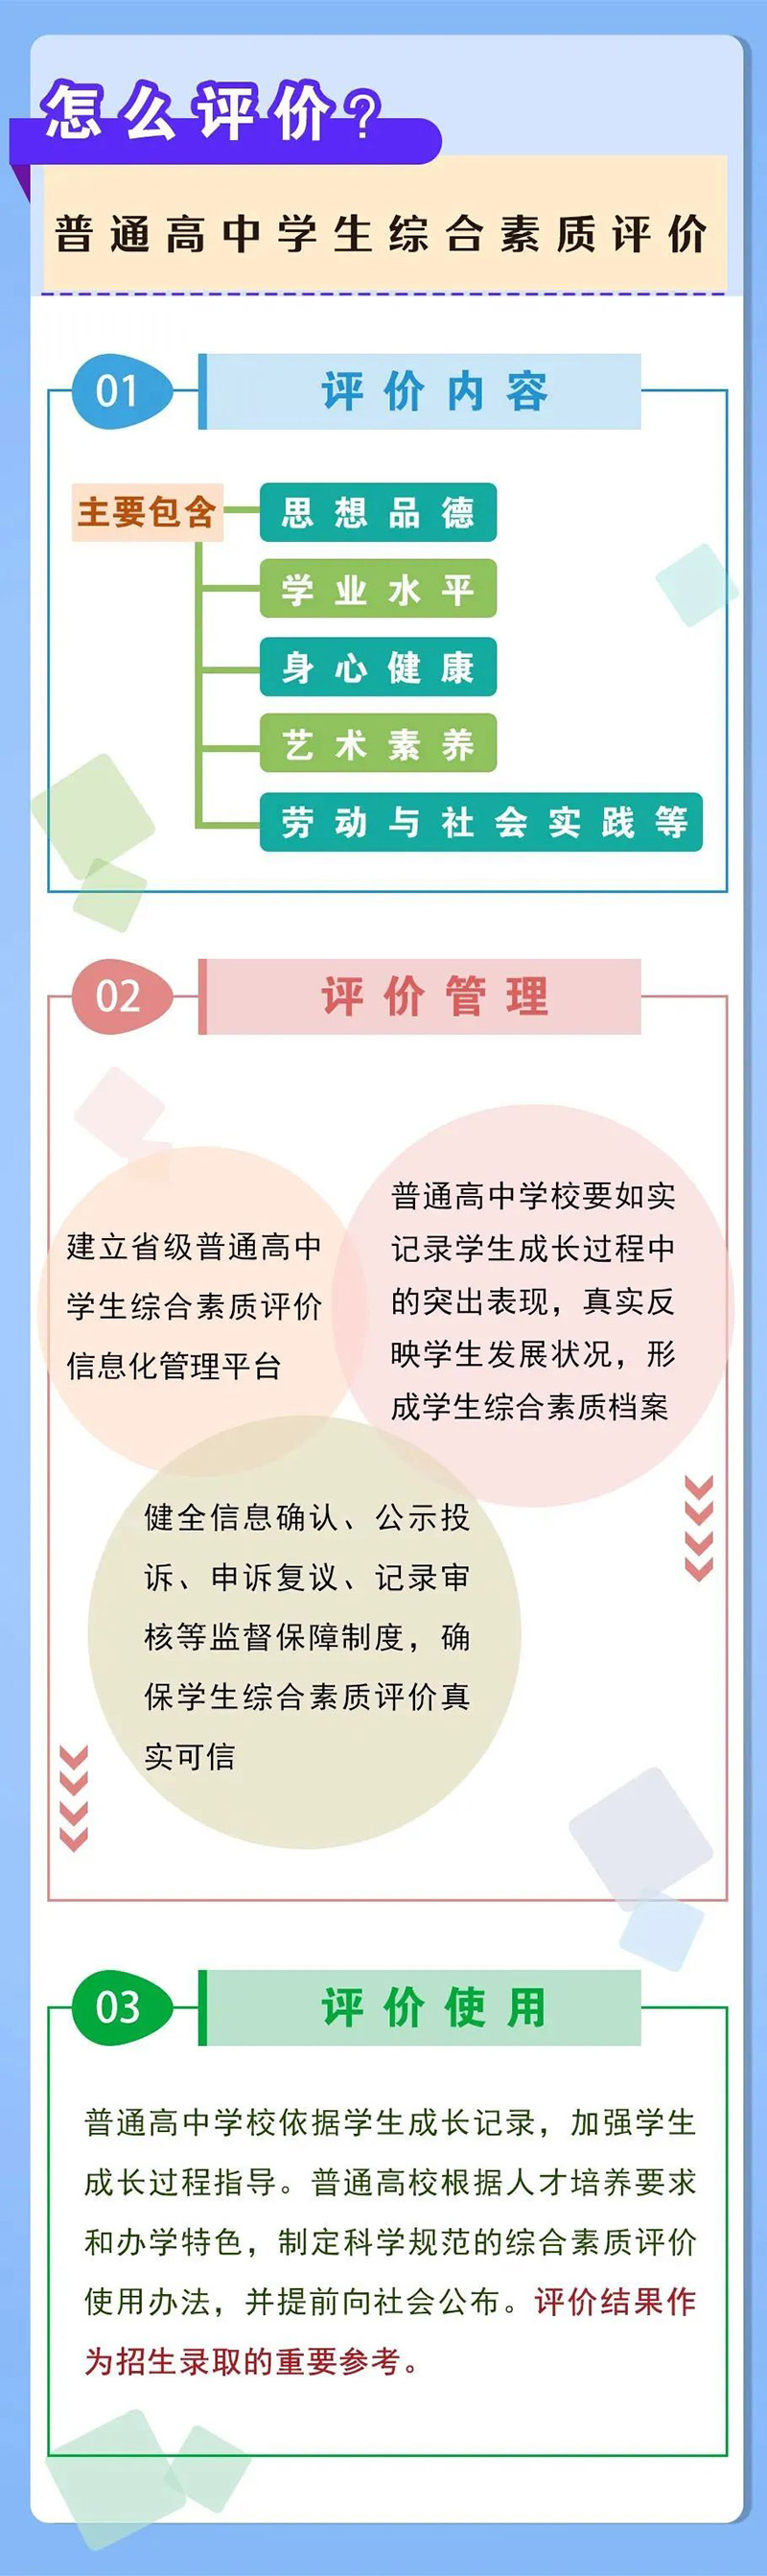 河南省高考综合改革方案-怎么评价